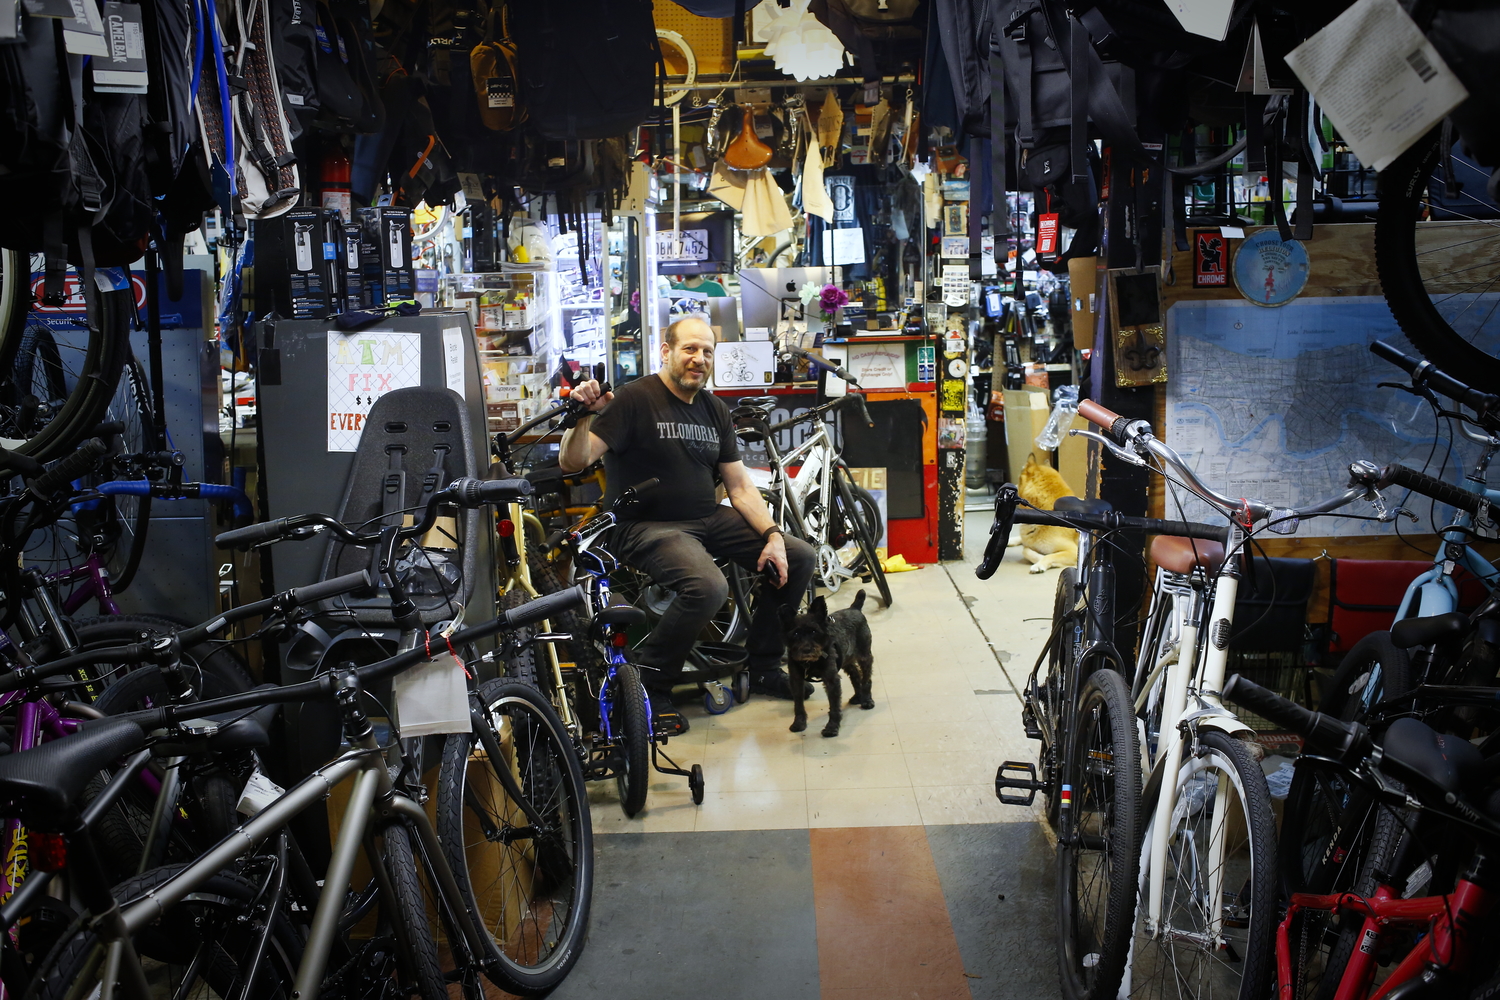 Michael et son chien dans le magasin de vélo © Globe Reporters